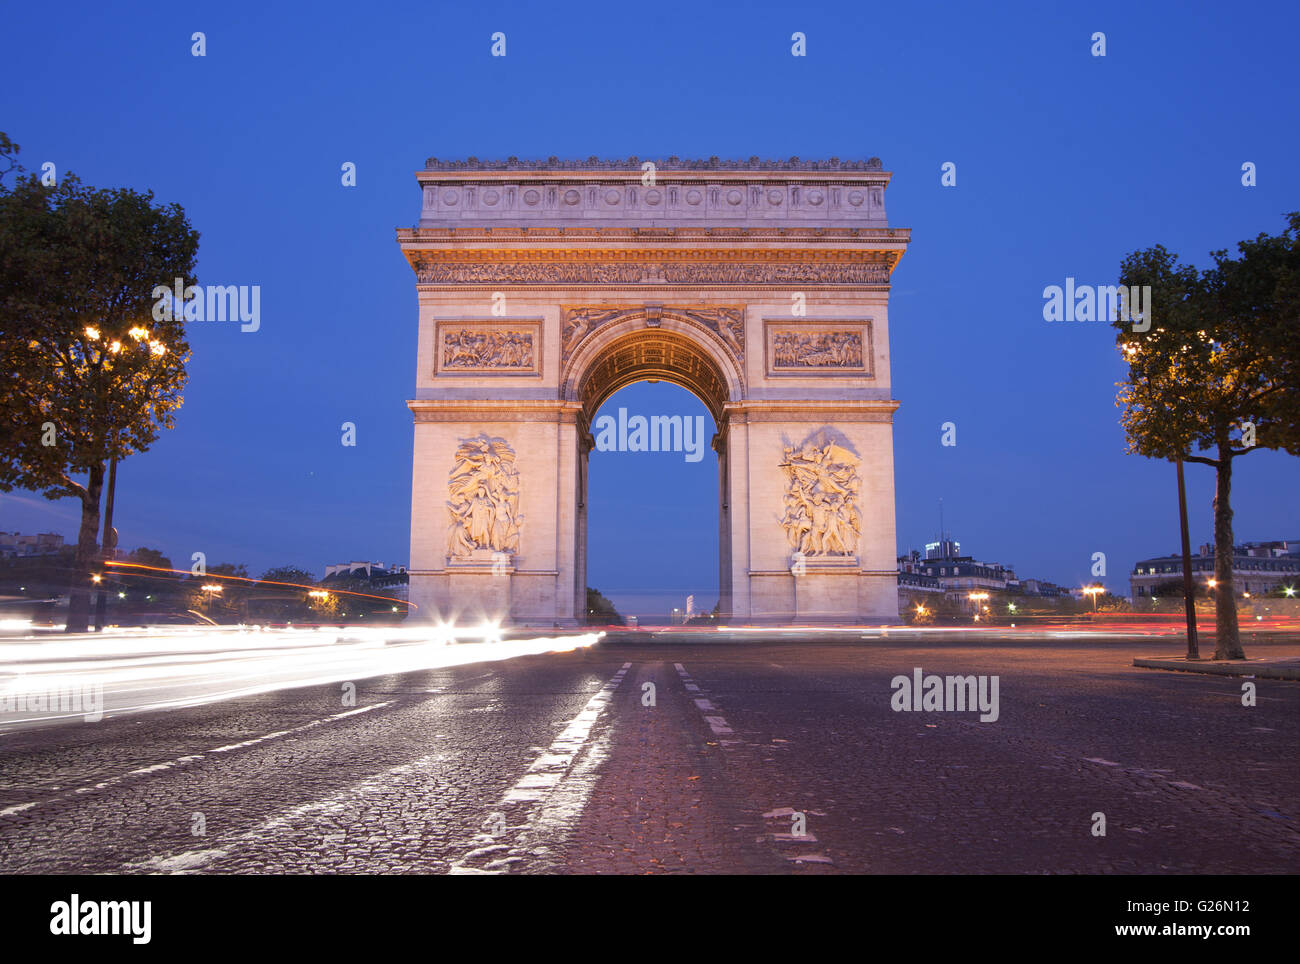 Vista frontal del Arc de Triomphe (Arco de Triunfo) en París al anochecer con semáforo trail Foto de stock